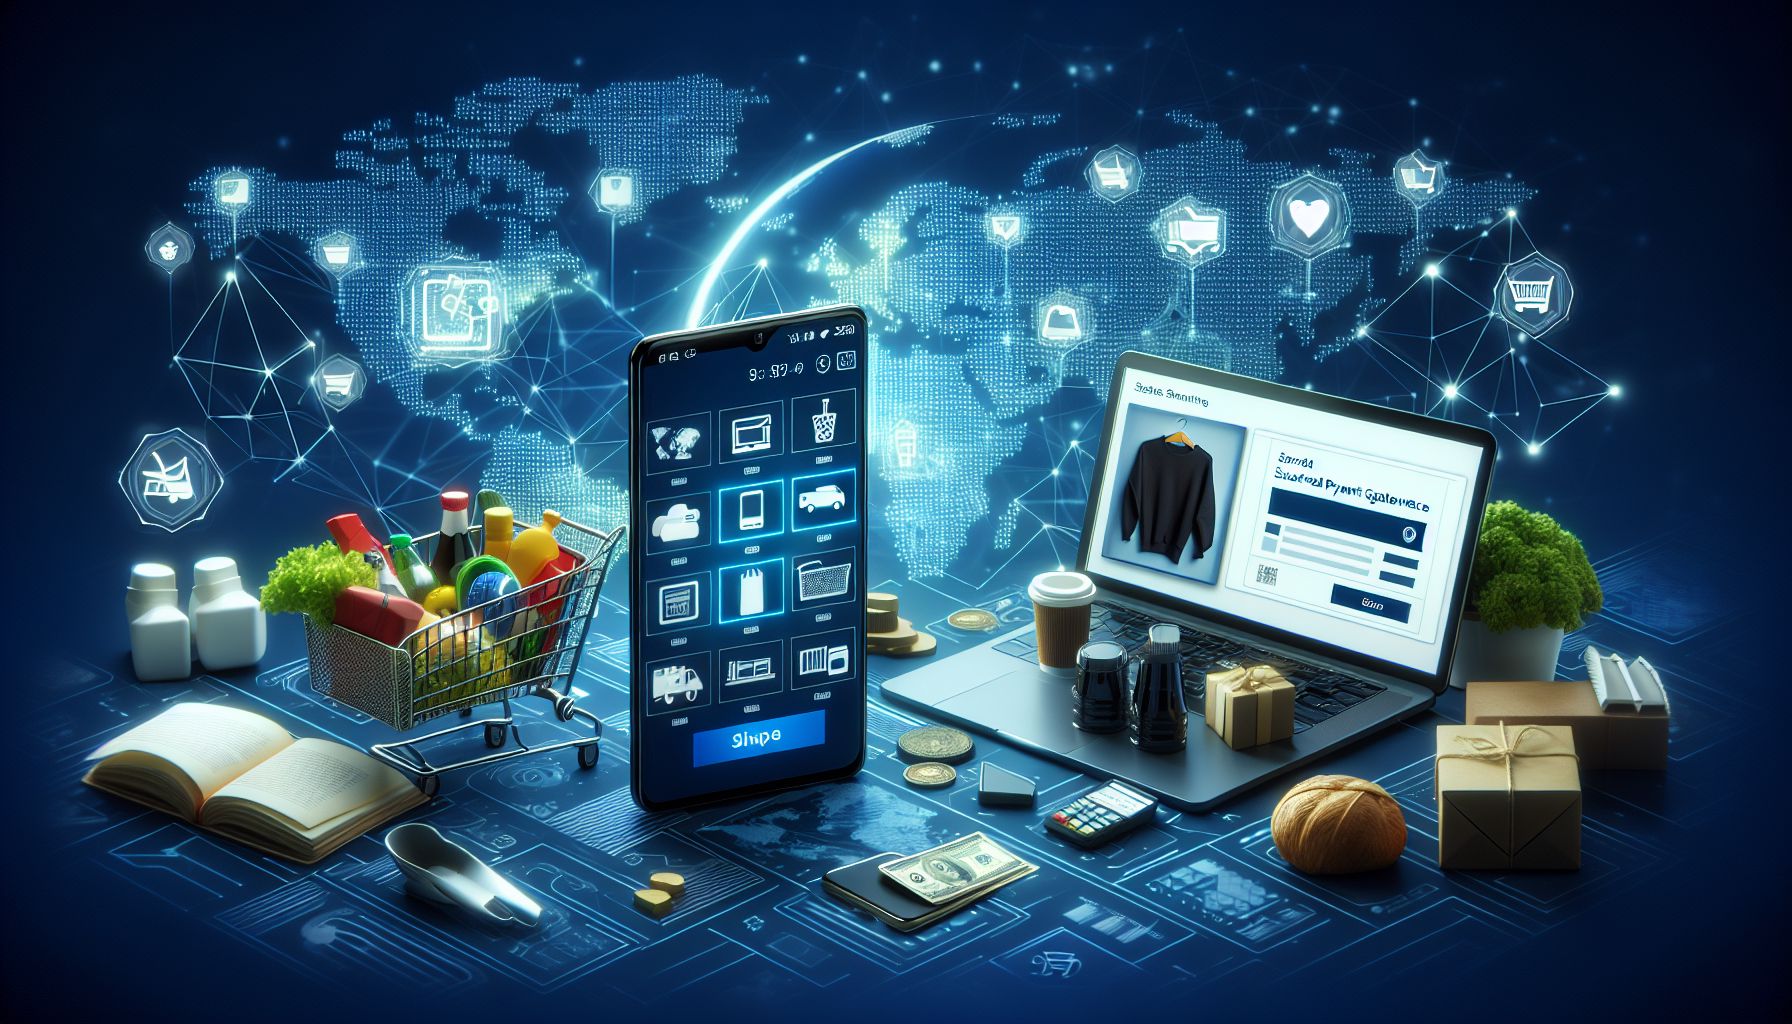 #Verkkokauppa – Uusi tapa tehdä ostoksia